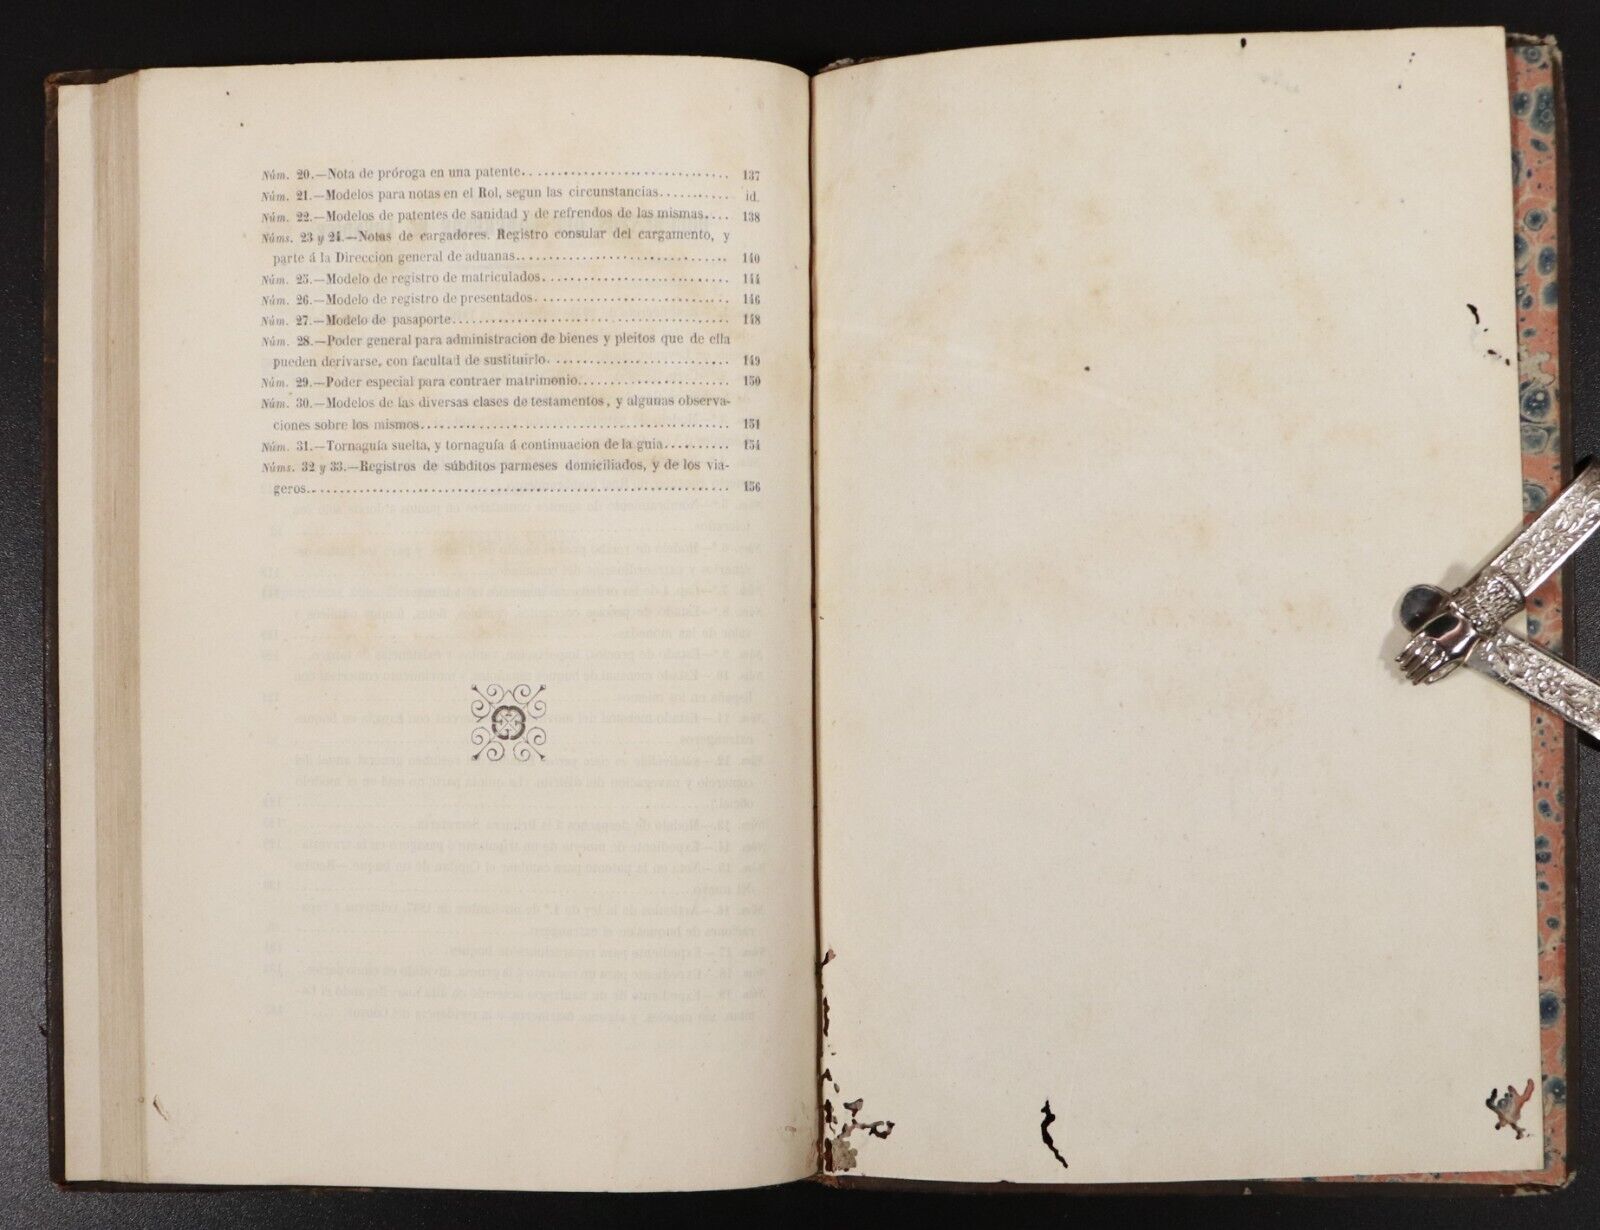 1858 Guía Práctica para los consulados de España Antiquarian History Book Spain